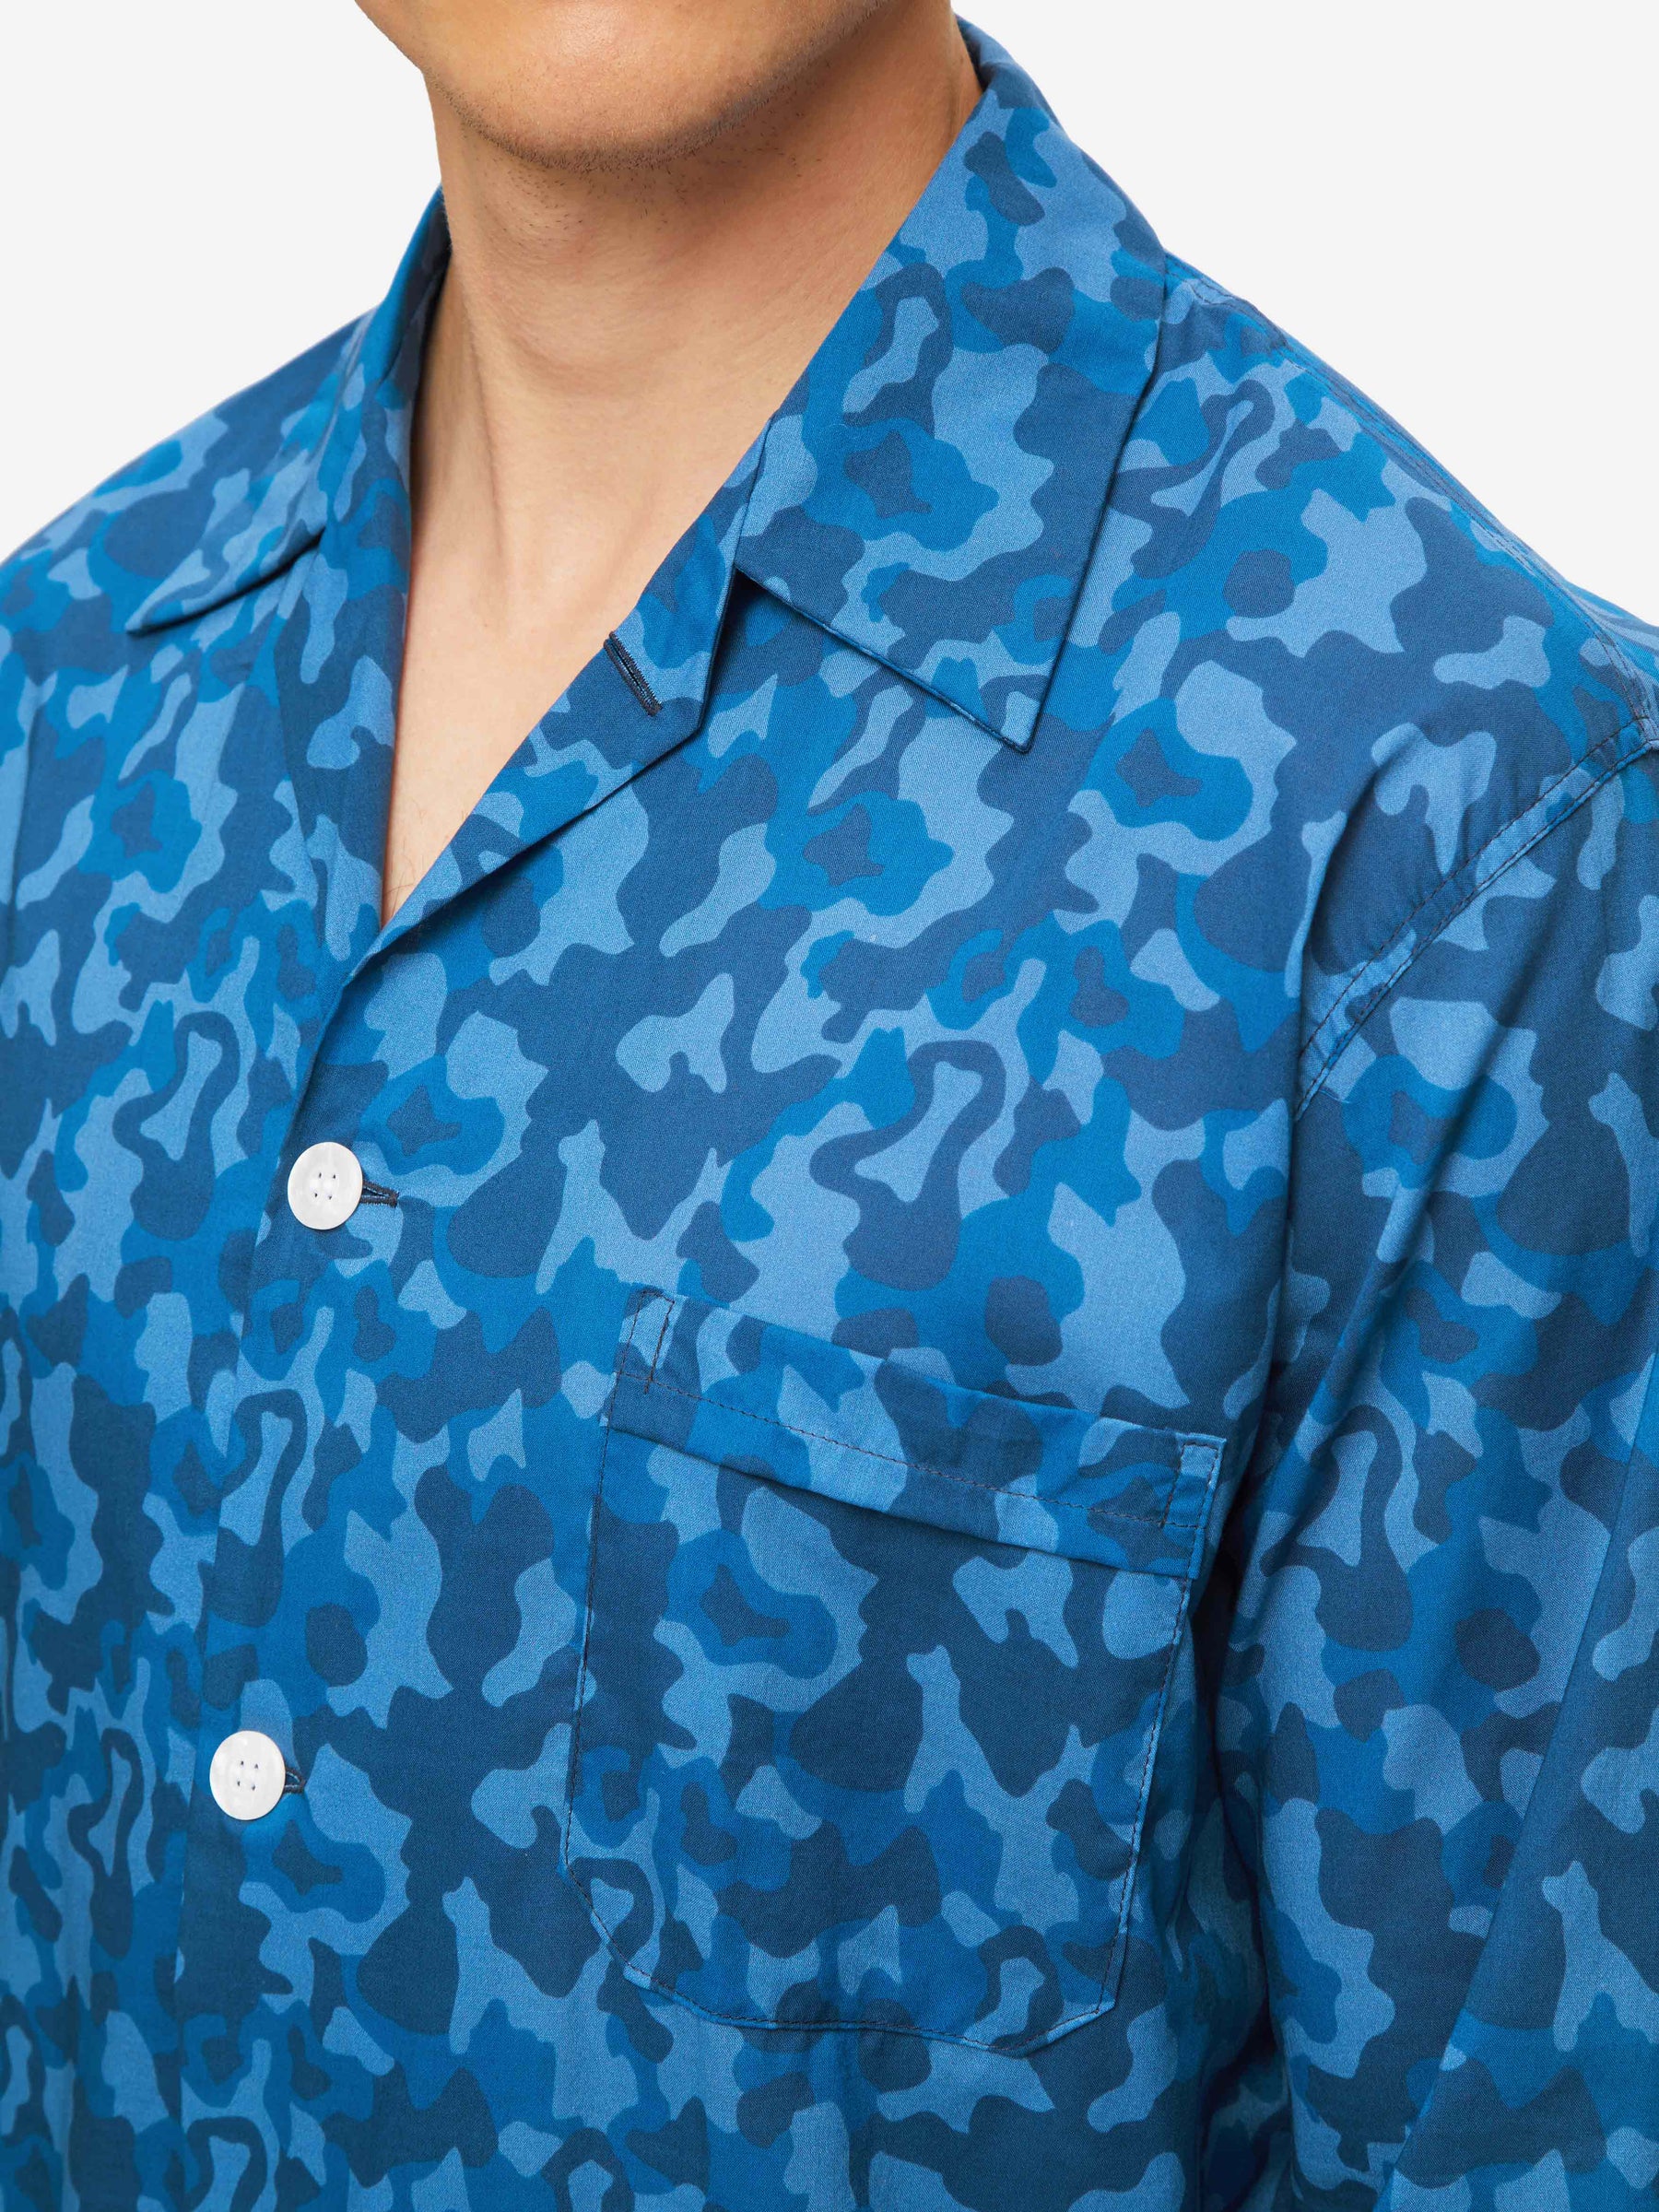 Men's Classic Fit Pyjamas Ledbury 55 Cotton Batiste Blue